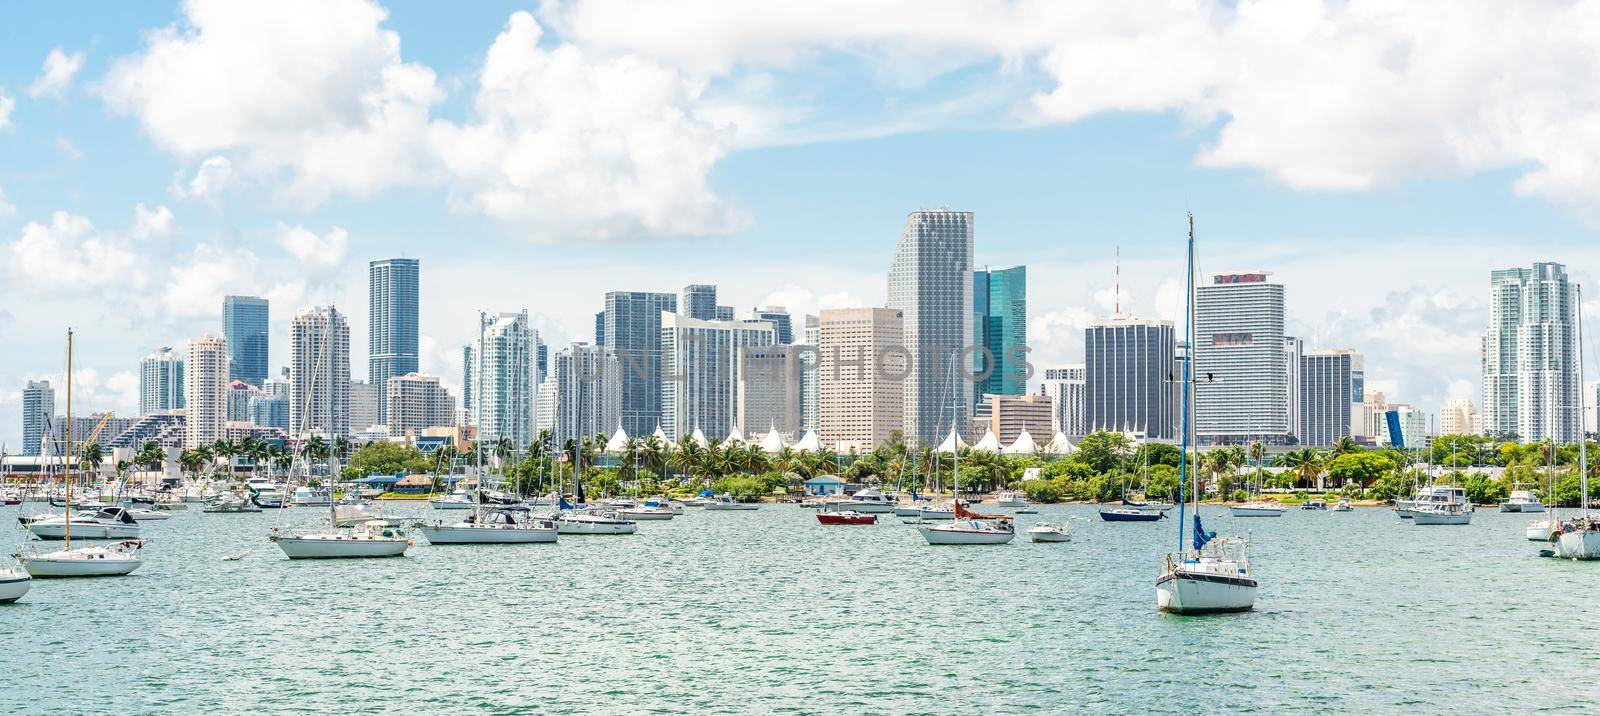 Miami, USA - September 11, 2019: Miami skyline with many yachts and boats